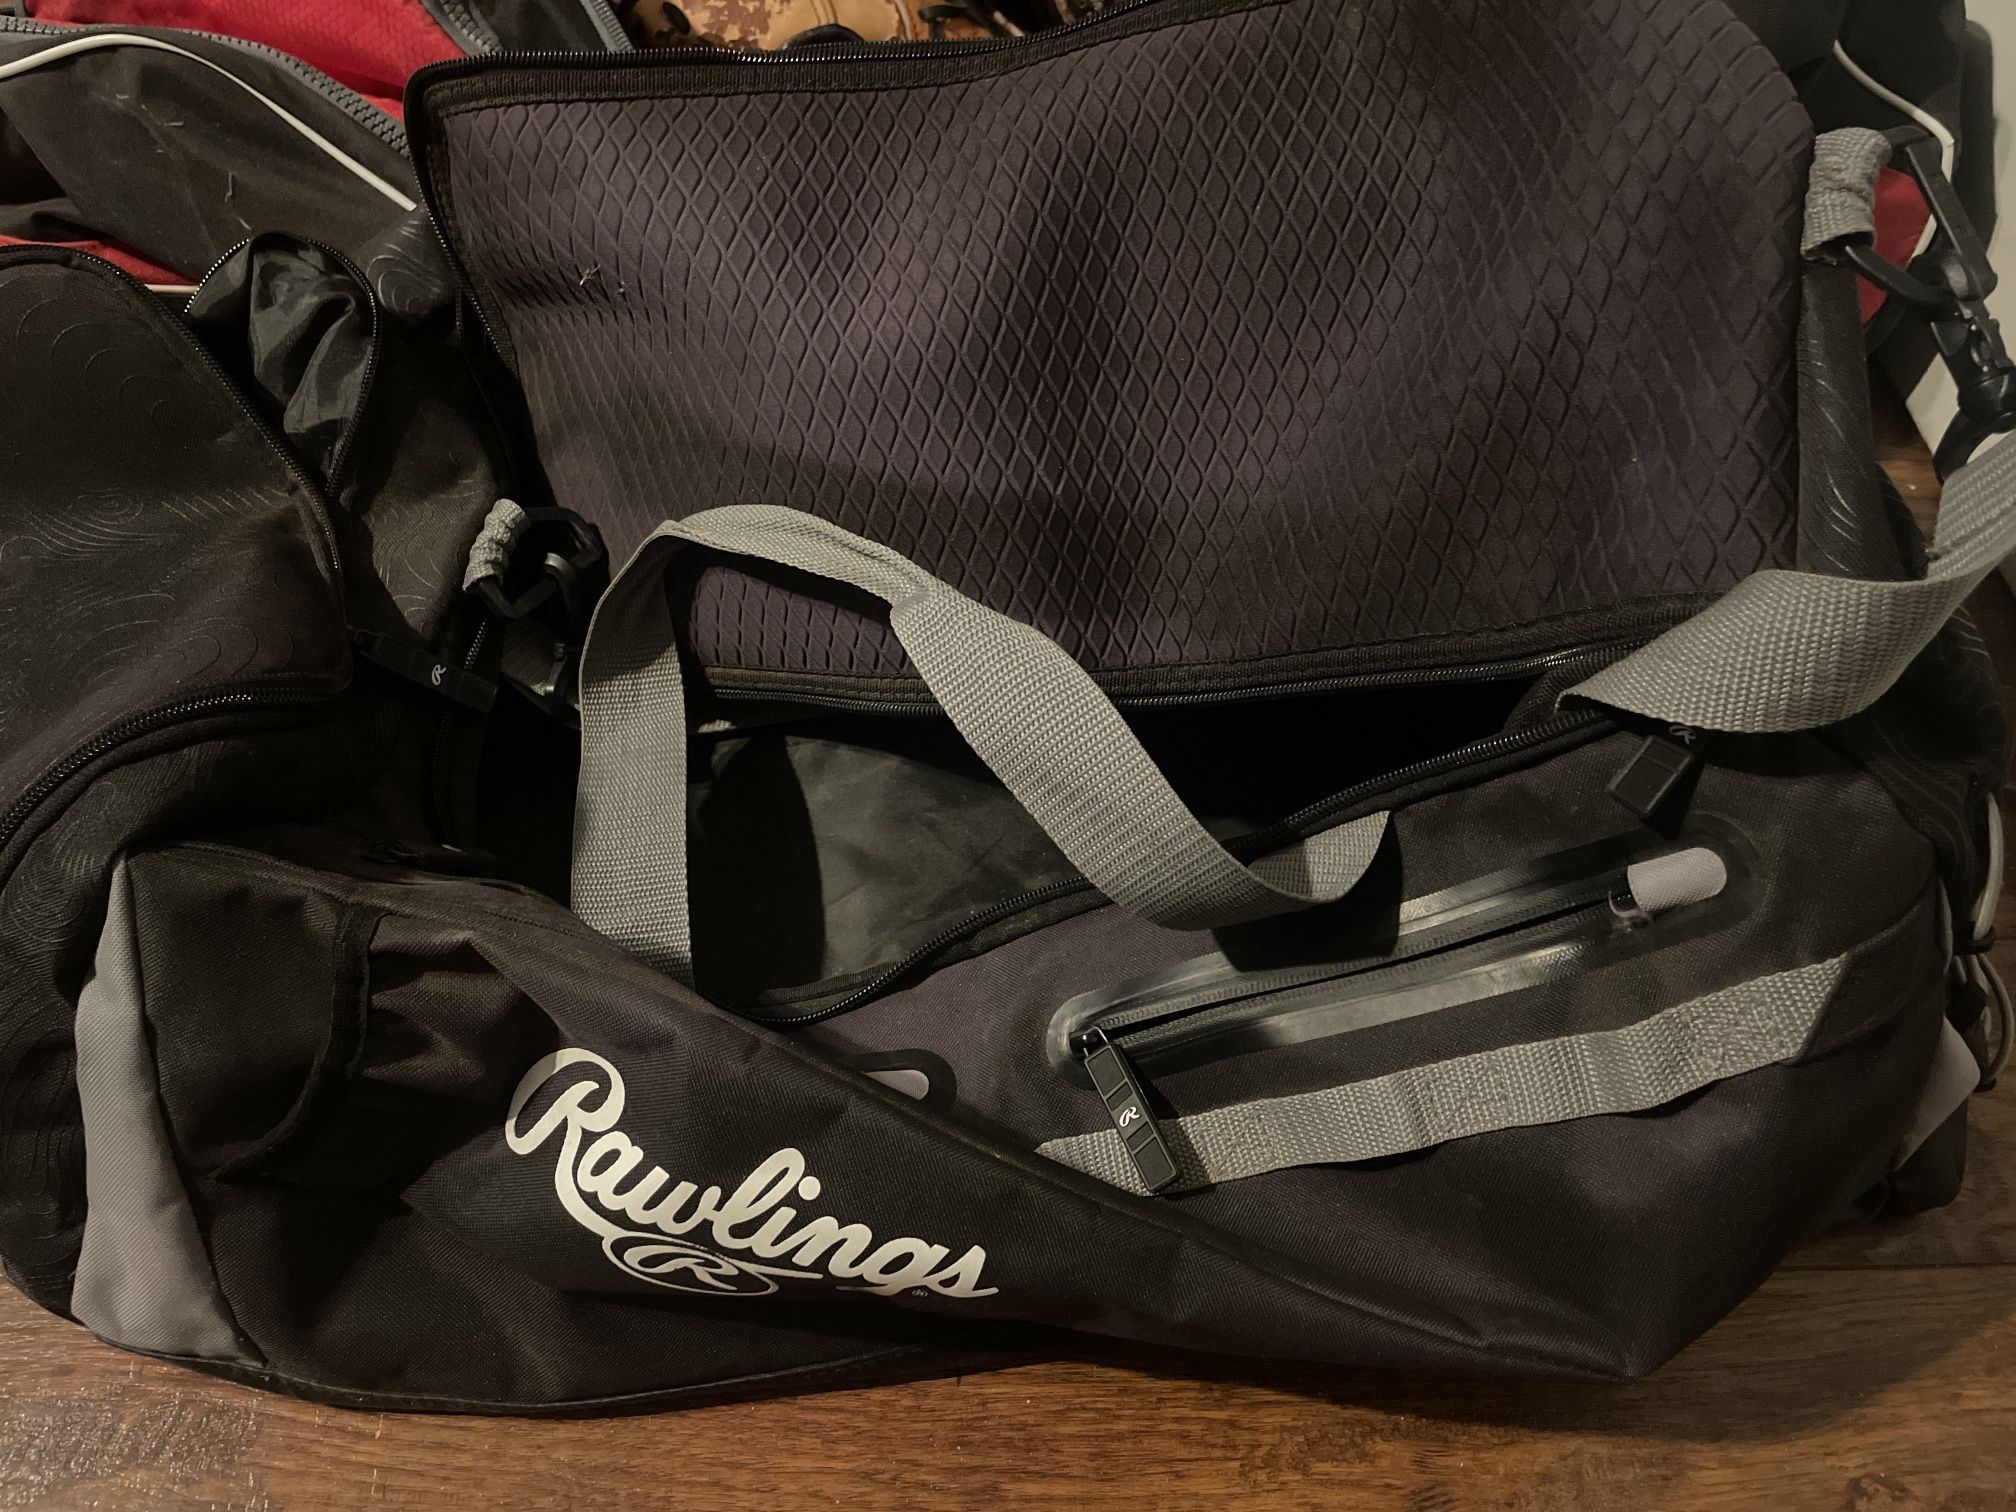 Rawlings Baseball Bag